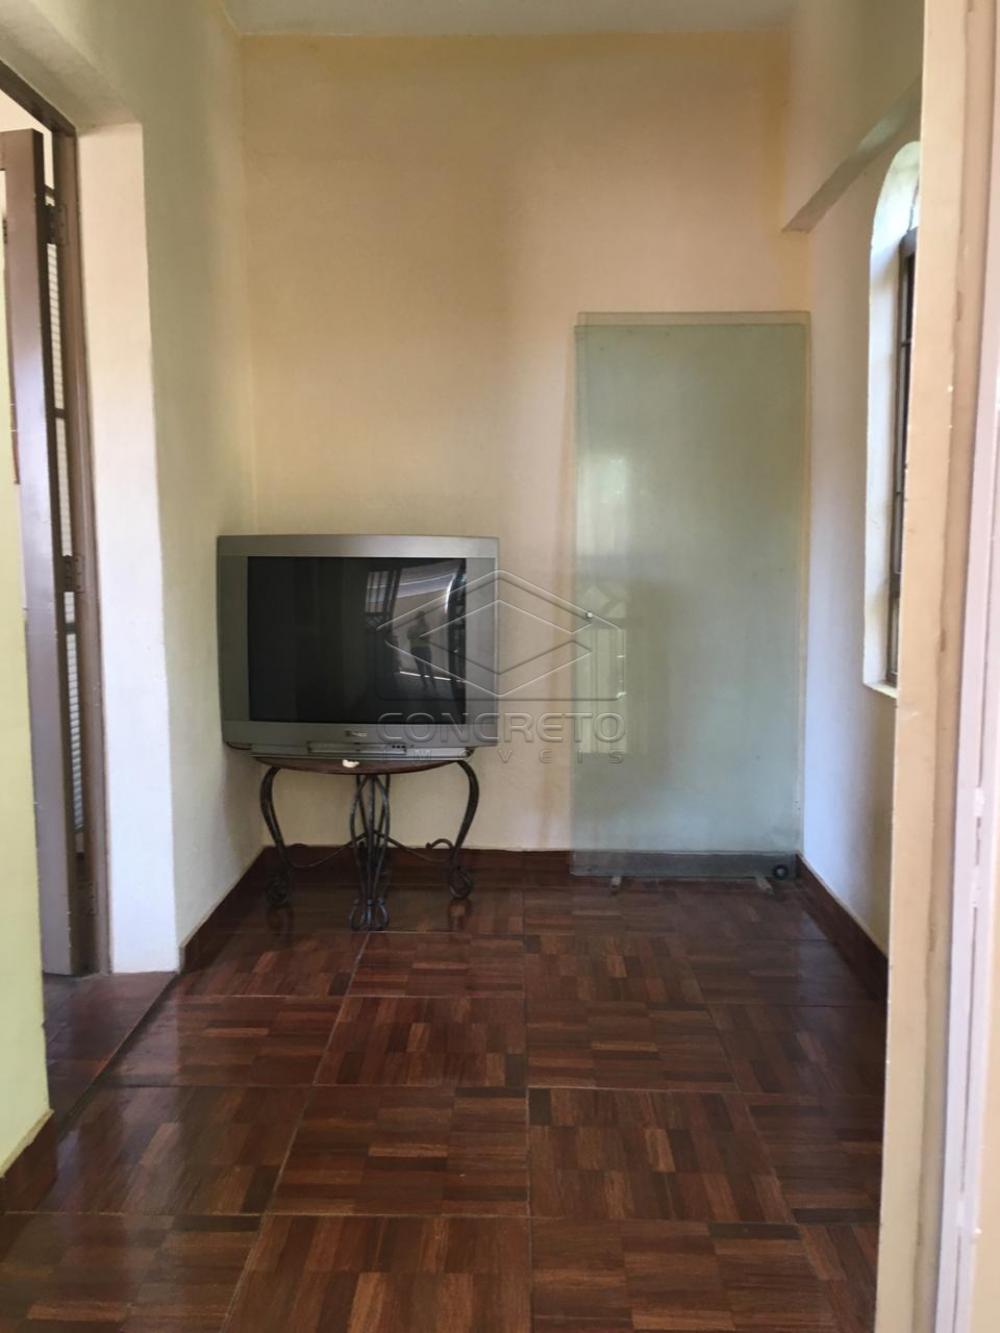 Comprar Casa / Residencia em Bauru R$ 320.000,00 - Foto 5